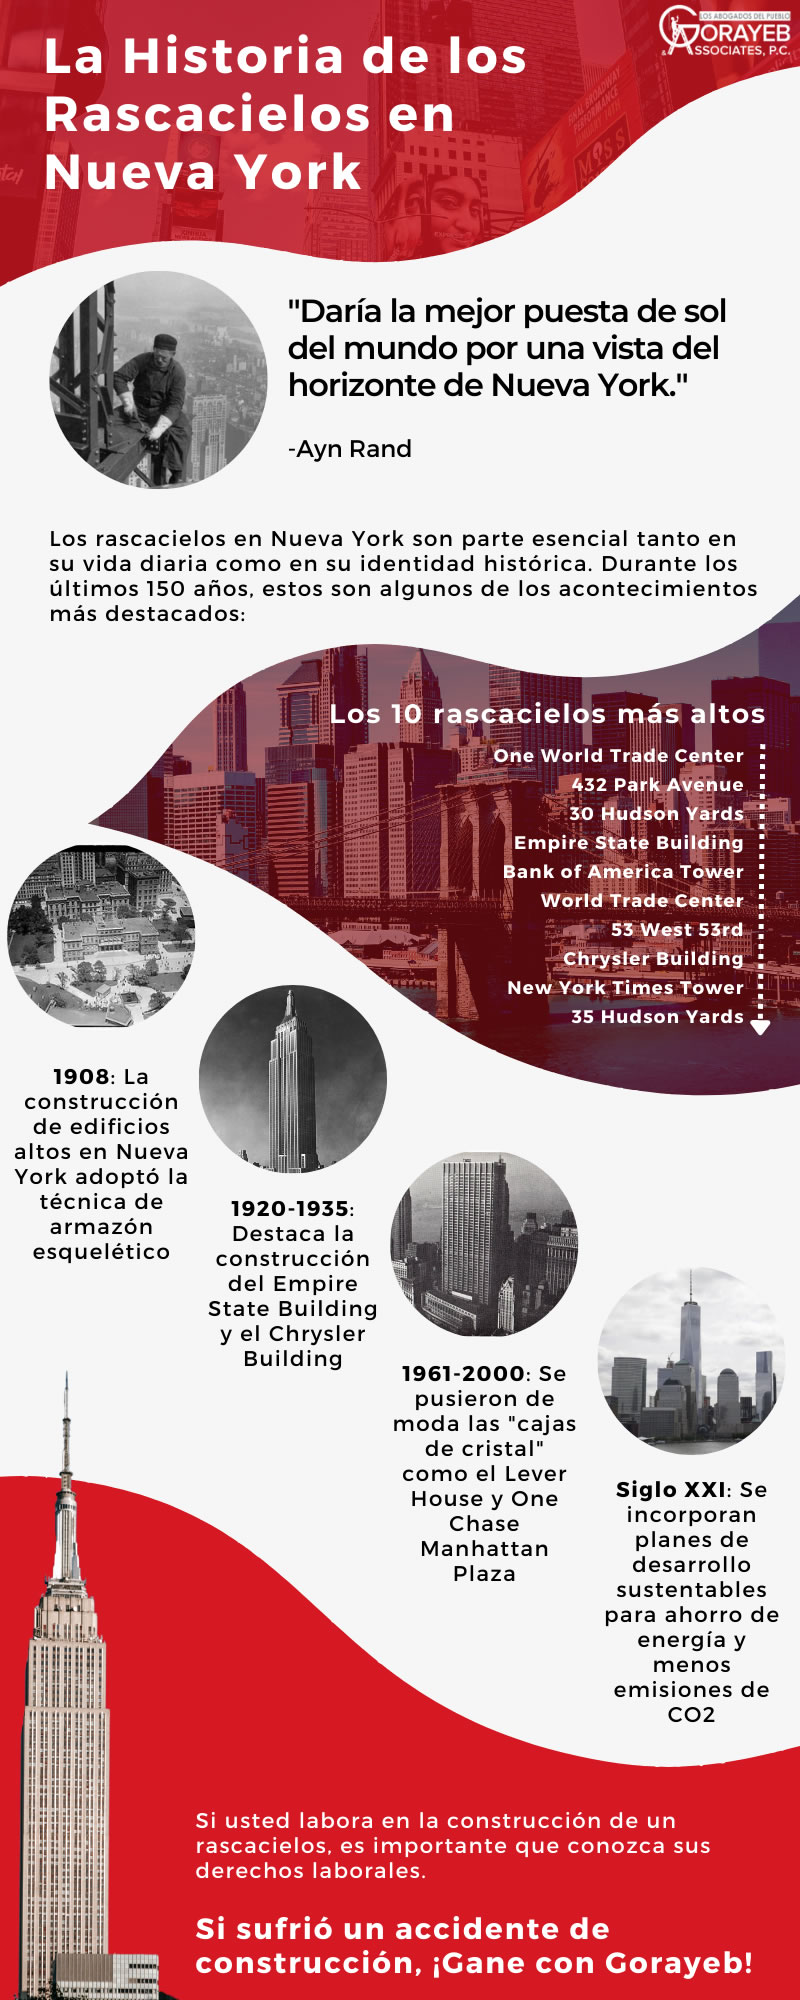 La historia de los rascacielos en Nueva York